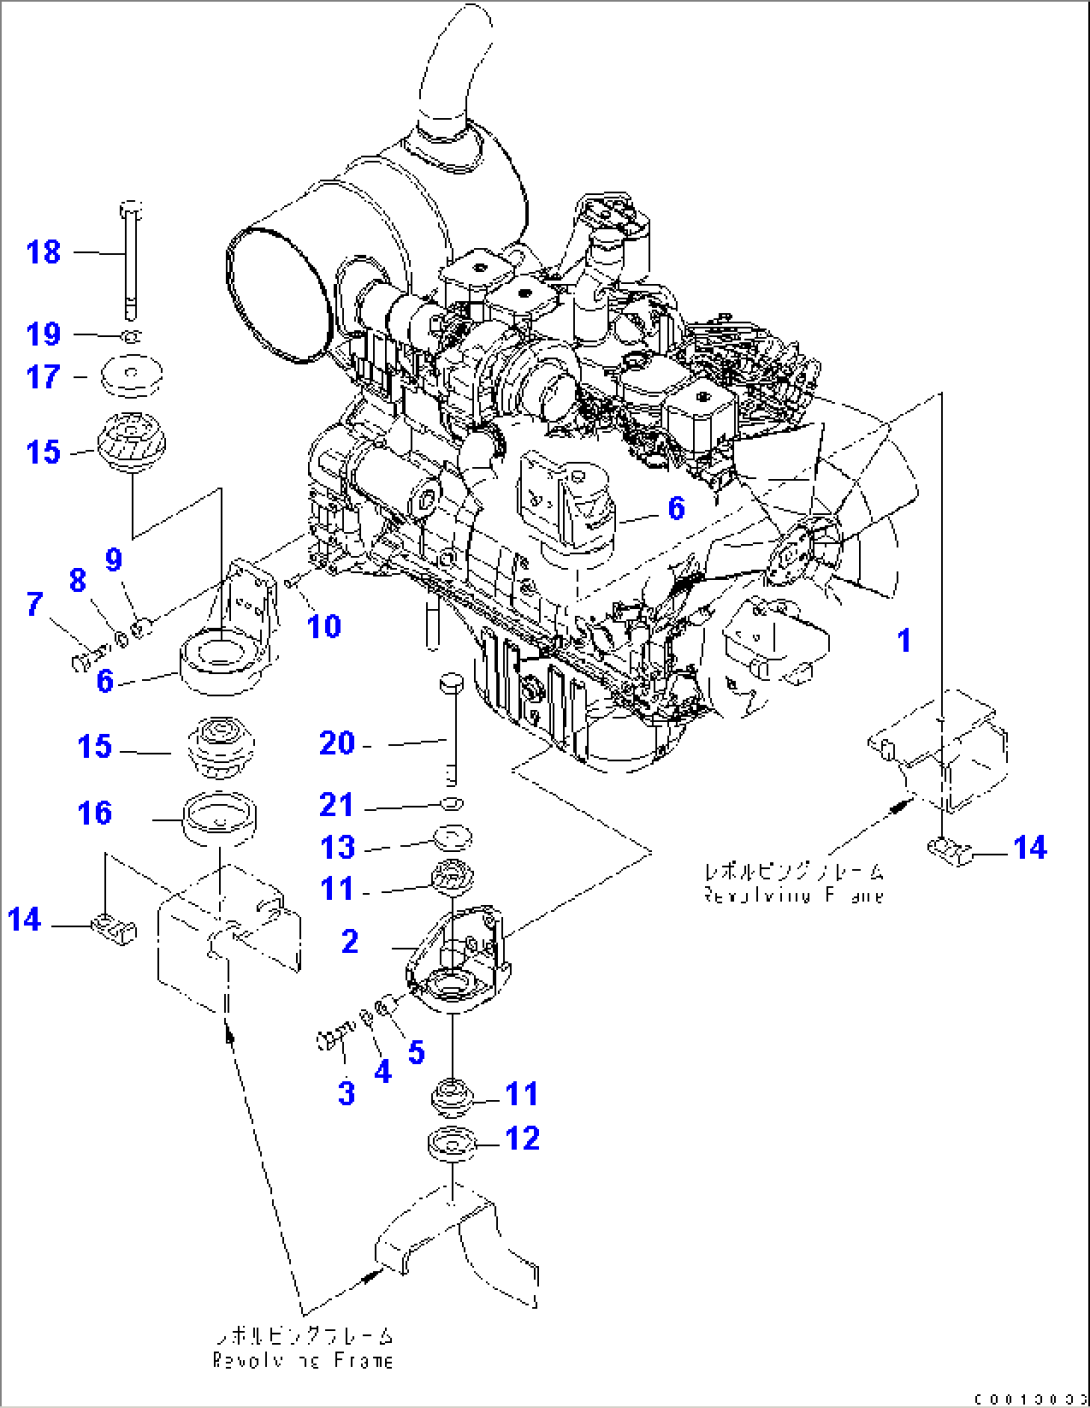 ENGINE MOUNTING (BRACKET AND CUSHION)